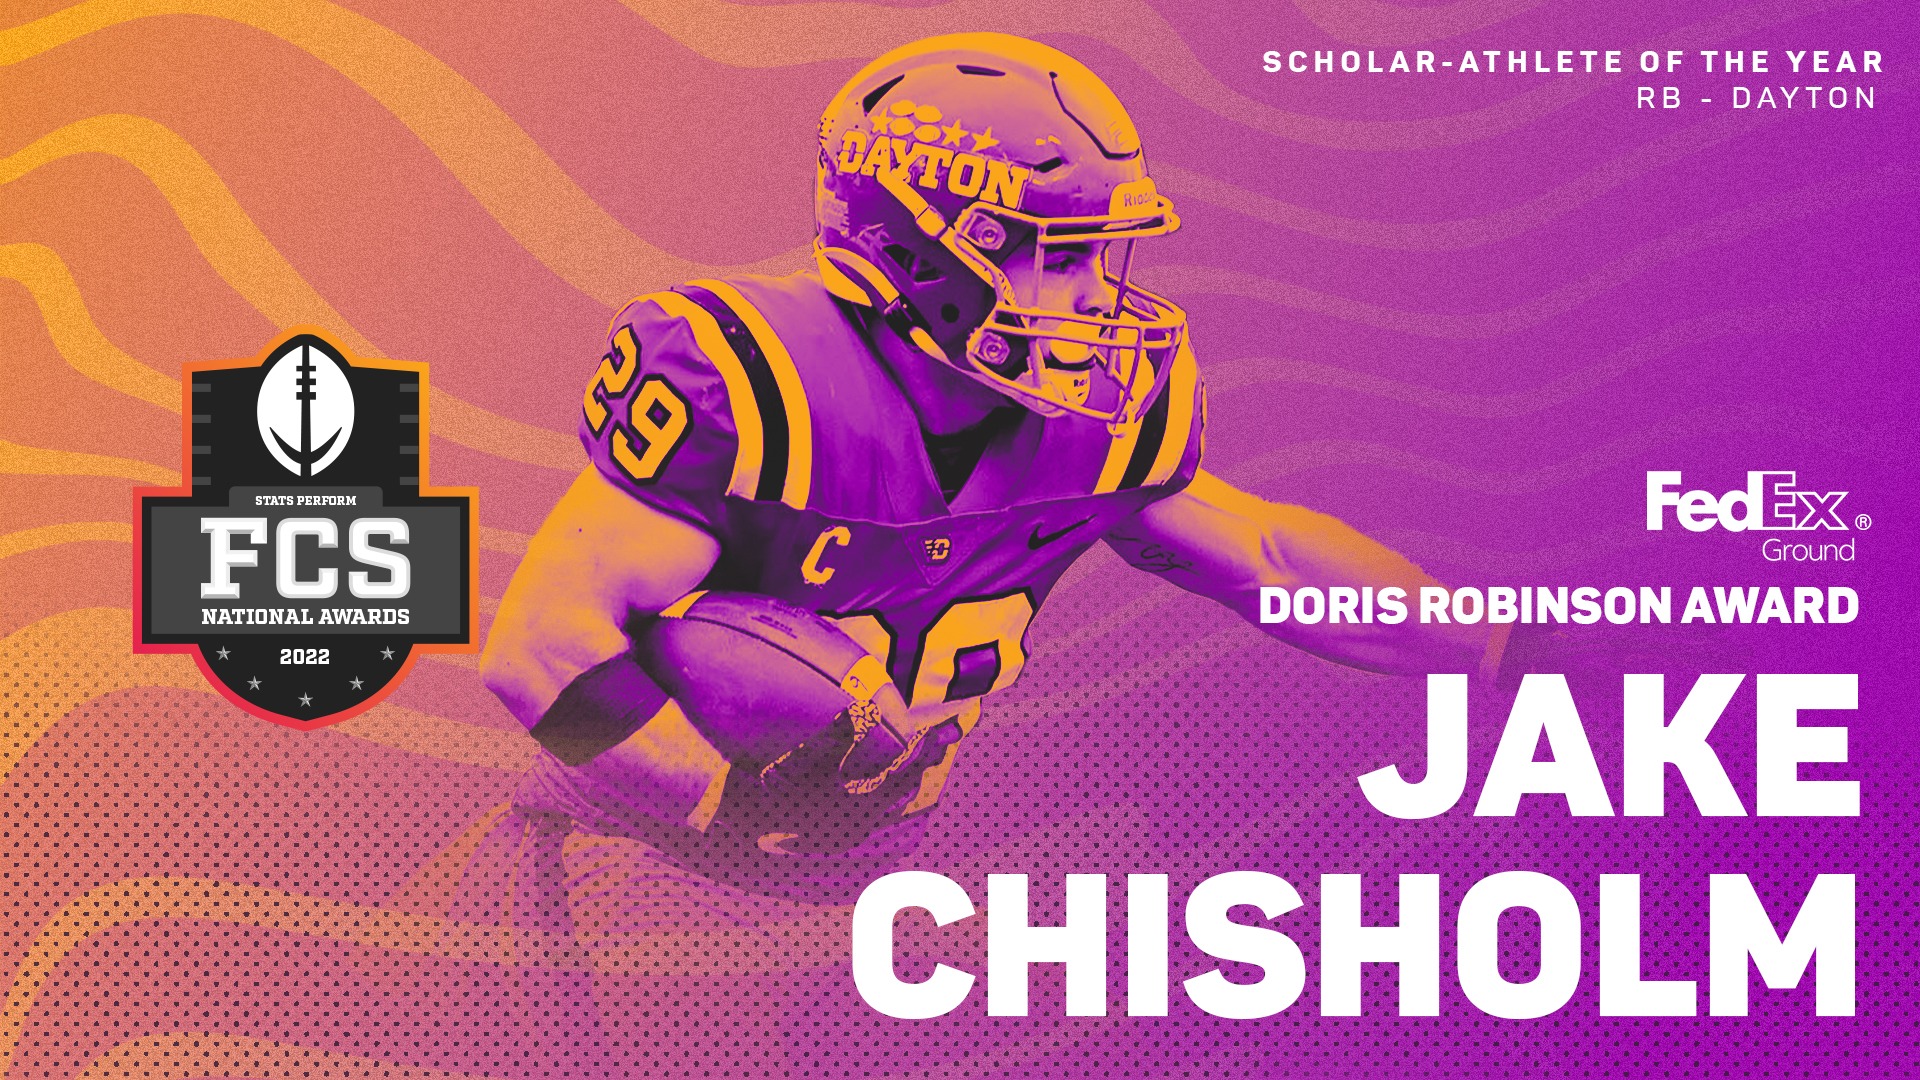 Dayton’s Jake Chisholm is 2022 Recipient of FedEx Ground Doris Robinson Scholar-Athlete Award